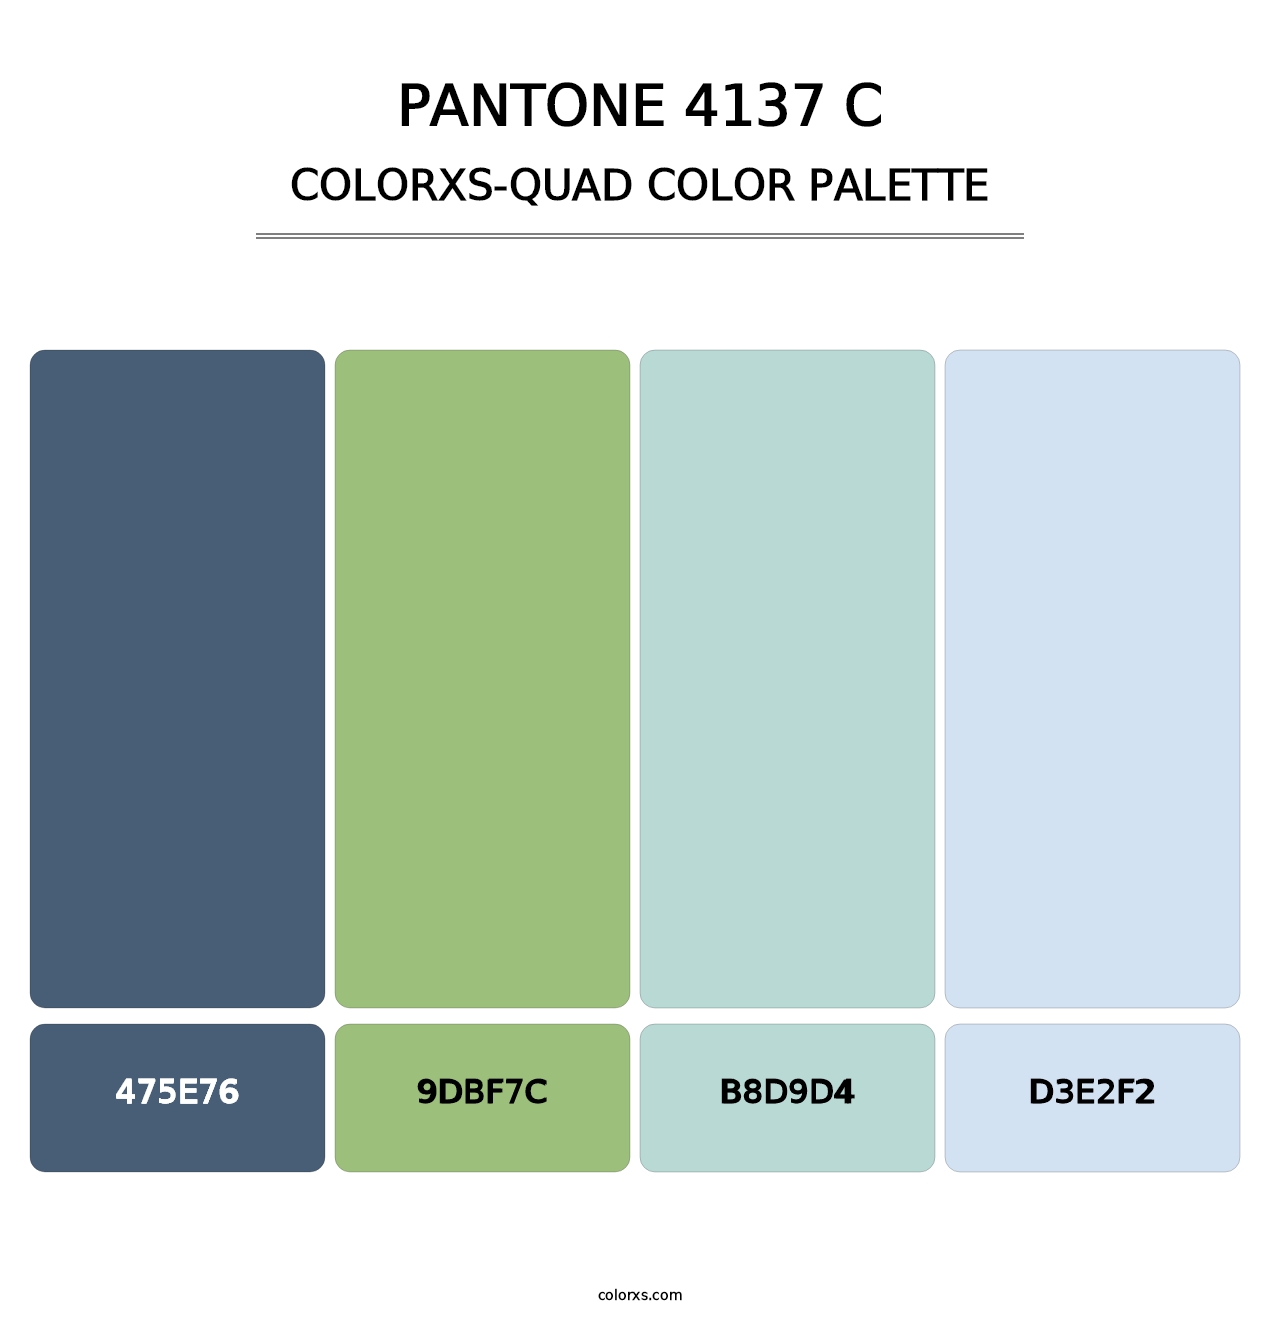 PANTONE 4137 C - Colorxs Quad Palette